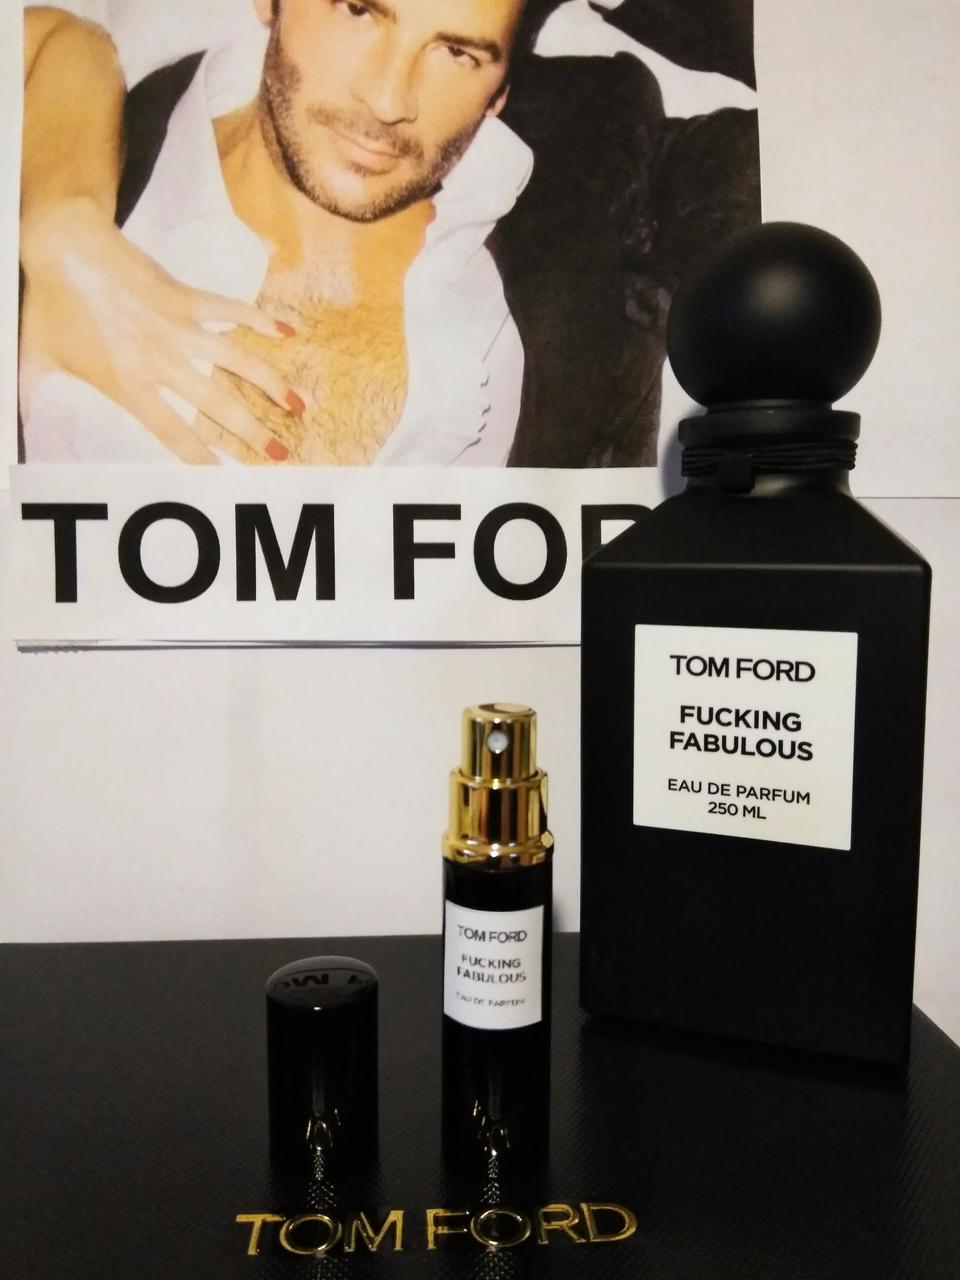 5ml FUCKING FABULOUS Authentic TOM FORD Perfume Spray Atomizer